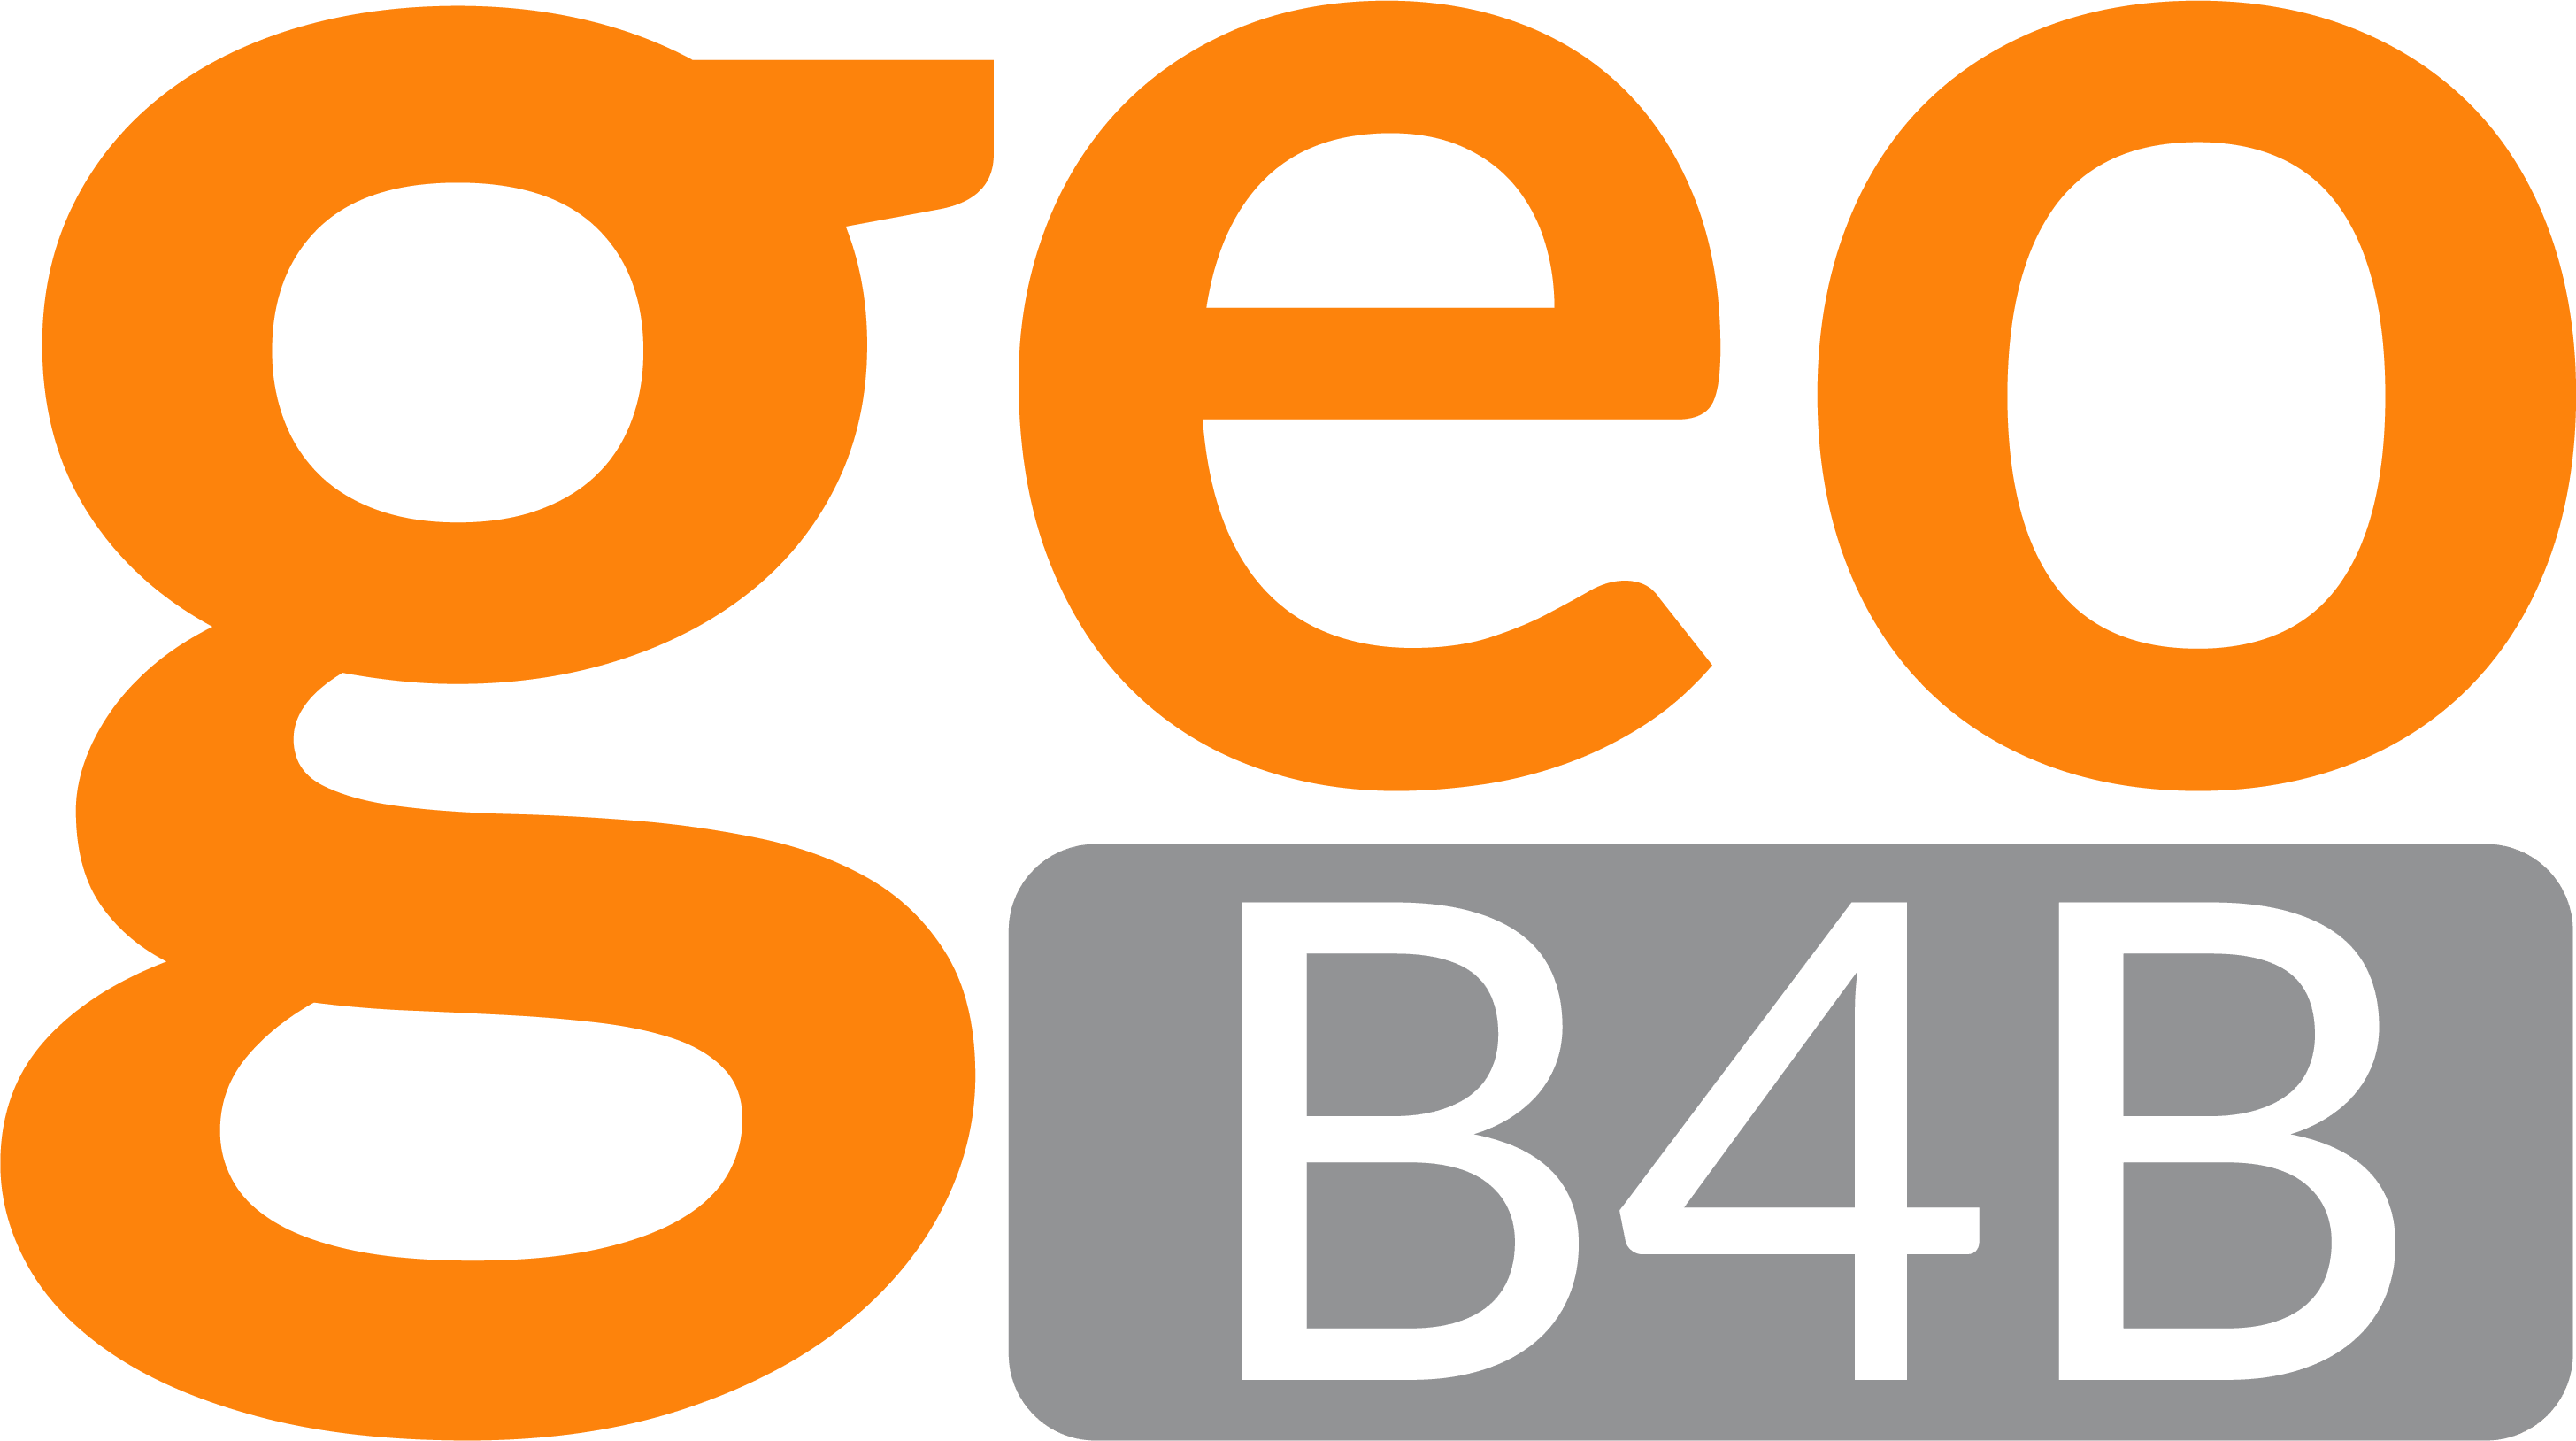 logo de geoB4B